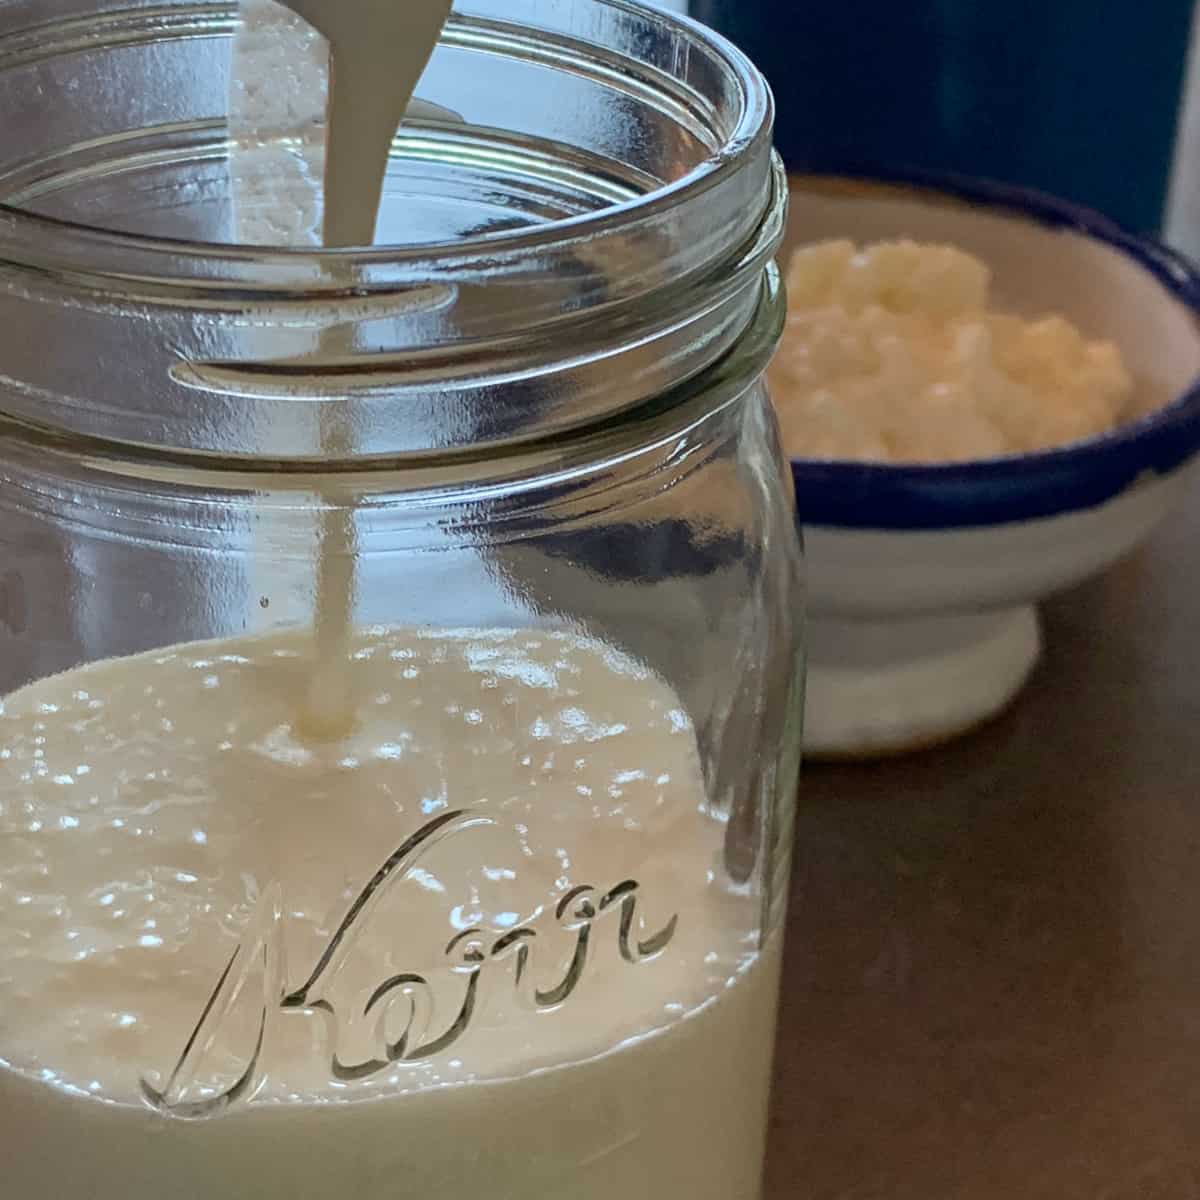 Homemade Kefir -Fermented Milk Drink